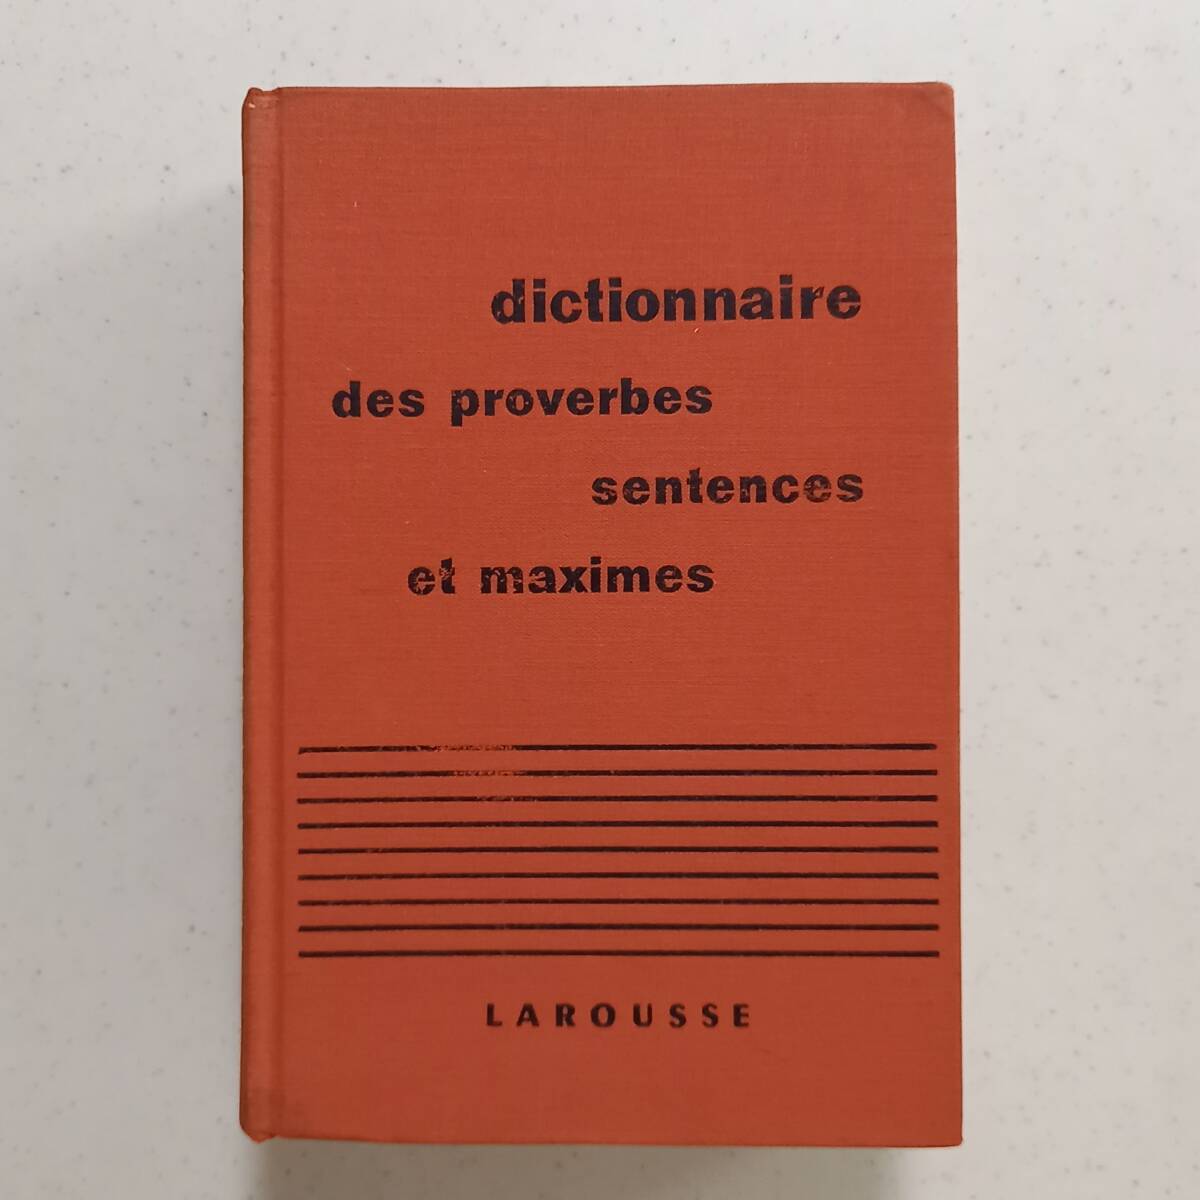 Maurice Maloux[.*.., золотой .. словарь ]( французский язык )/ Dictionnaire des proverbes sentences et maximes(Larousse,1960)